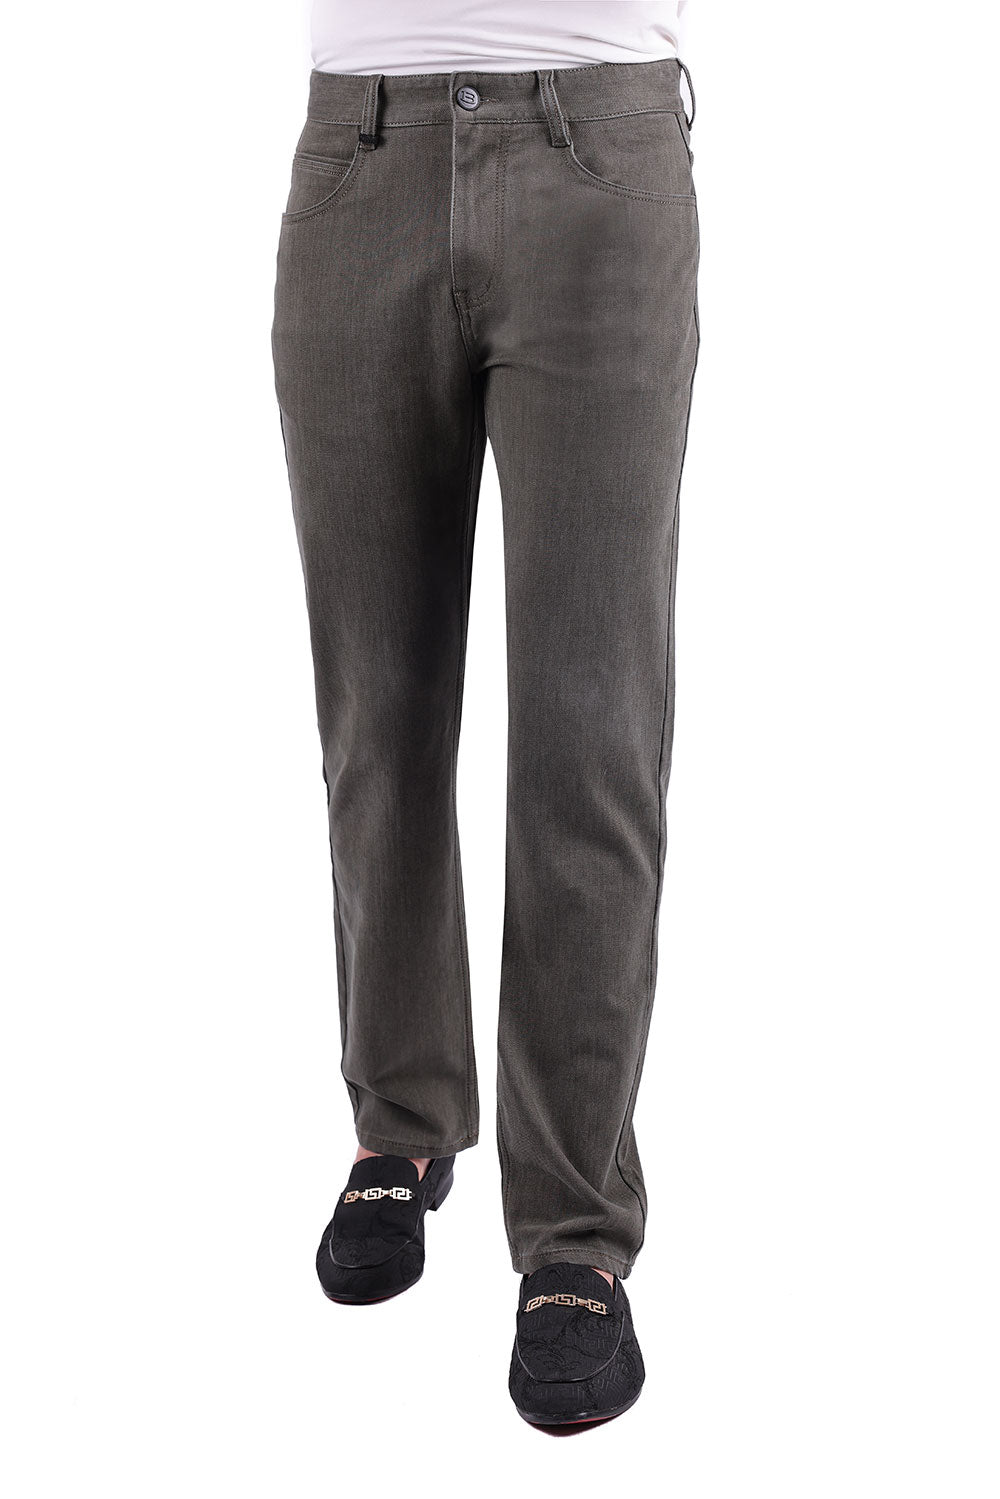 Barabas Men's Solid Color Premium Stretch Denim Jeans 3SN100 Olive